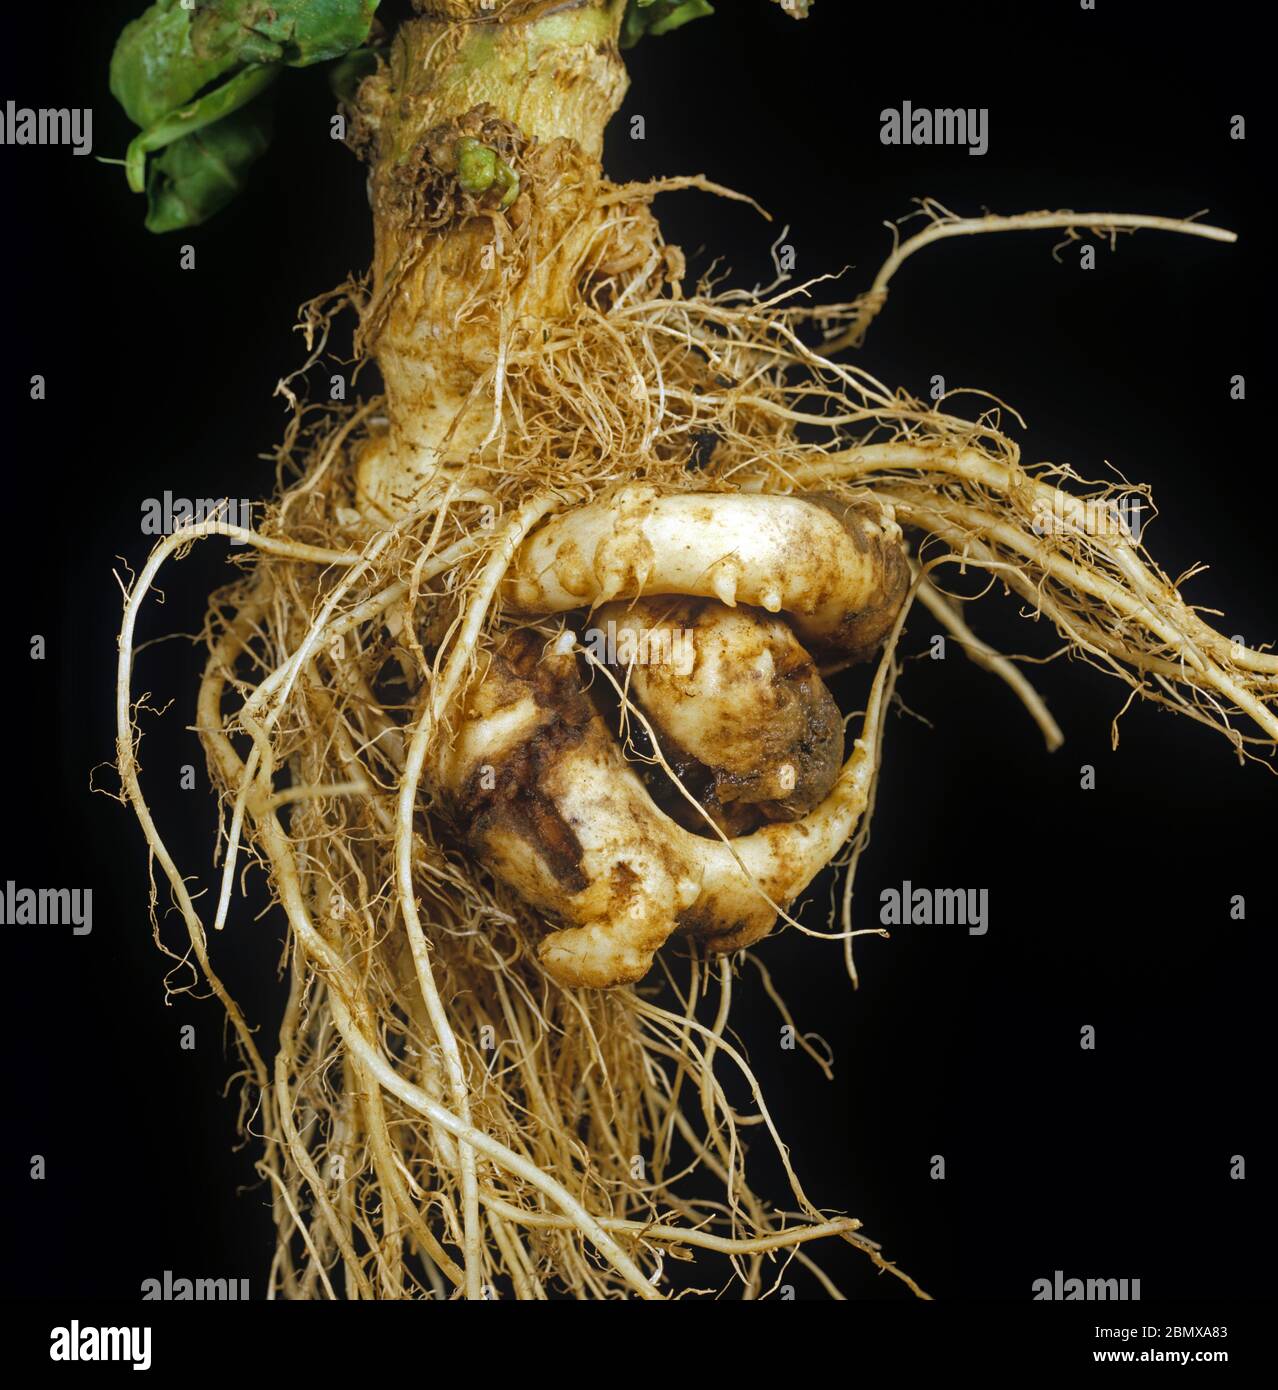 Clubroot (Plasmodiophora brassica) enferma de raíz torcida, malformada y distorsionada en una planta de repollo Foto de stock